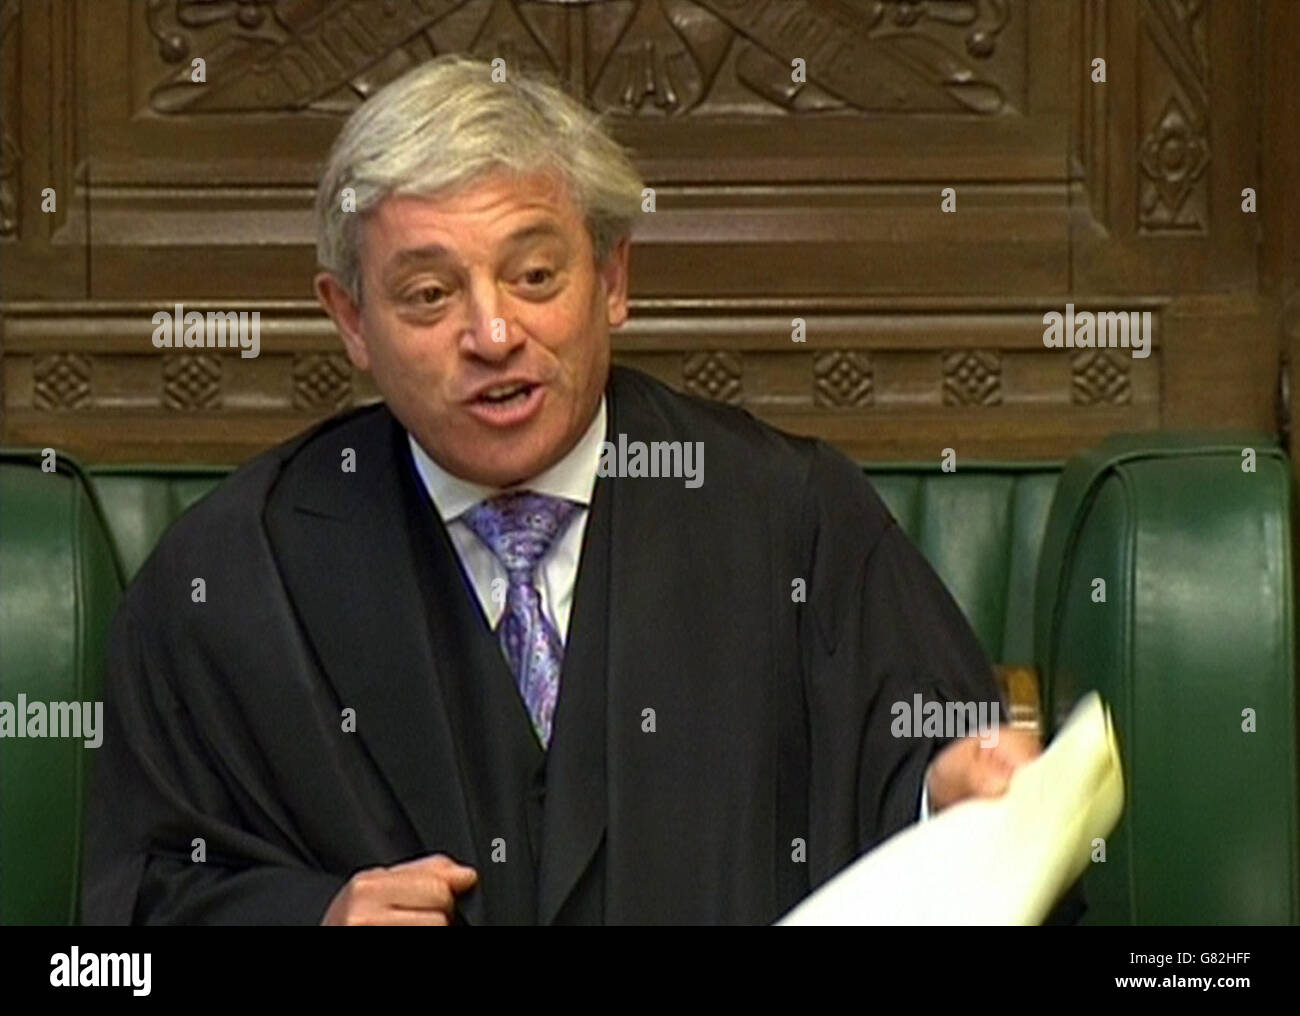 Commons Speaker John Bercow speaks in the House of Commons, London, during an EU referendum bill debate. Stock Photo